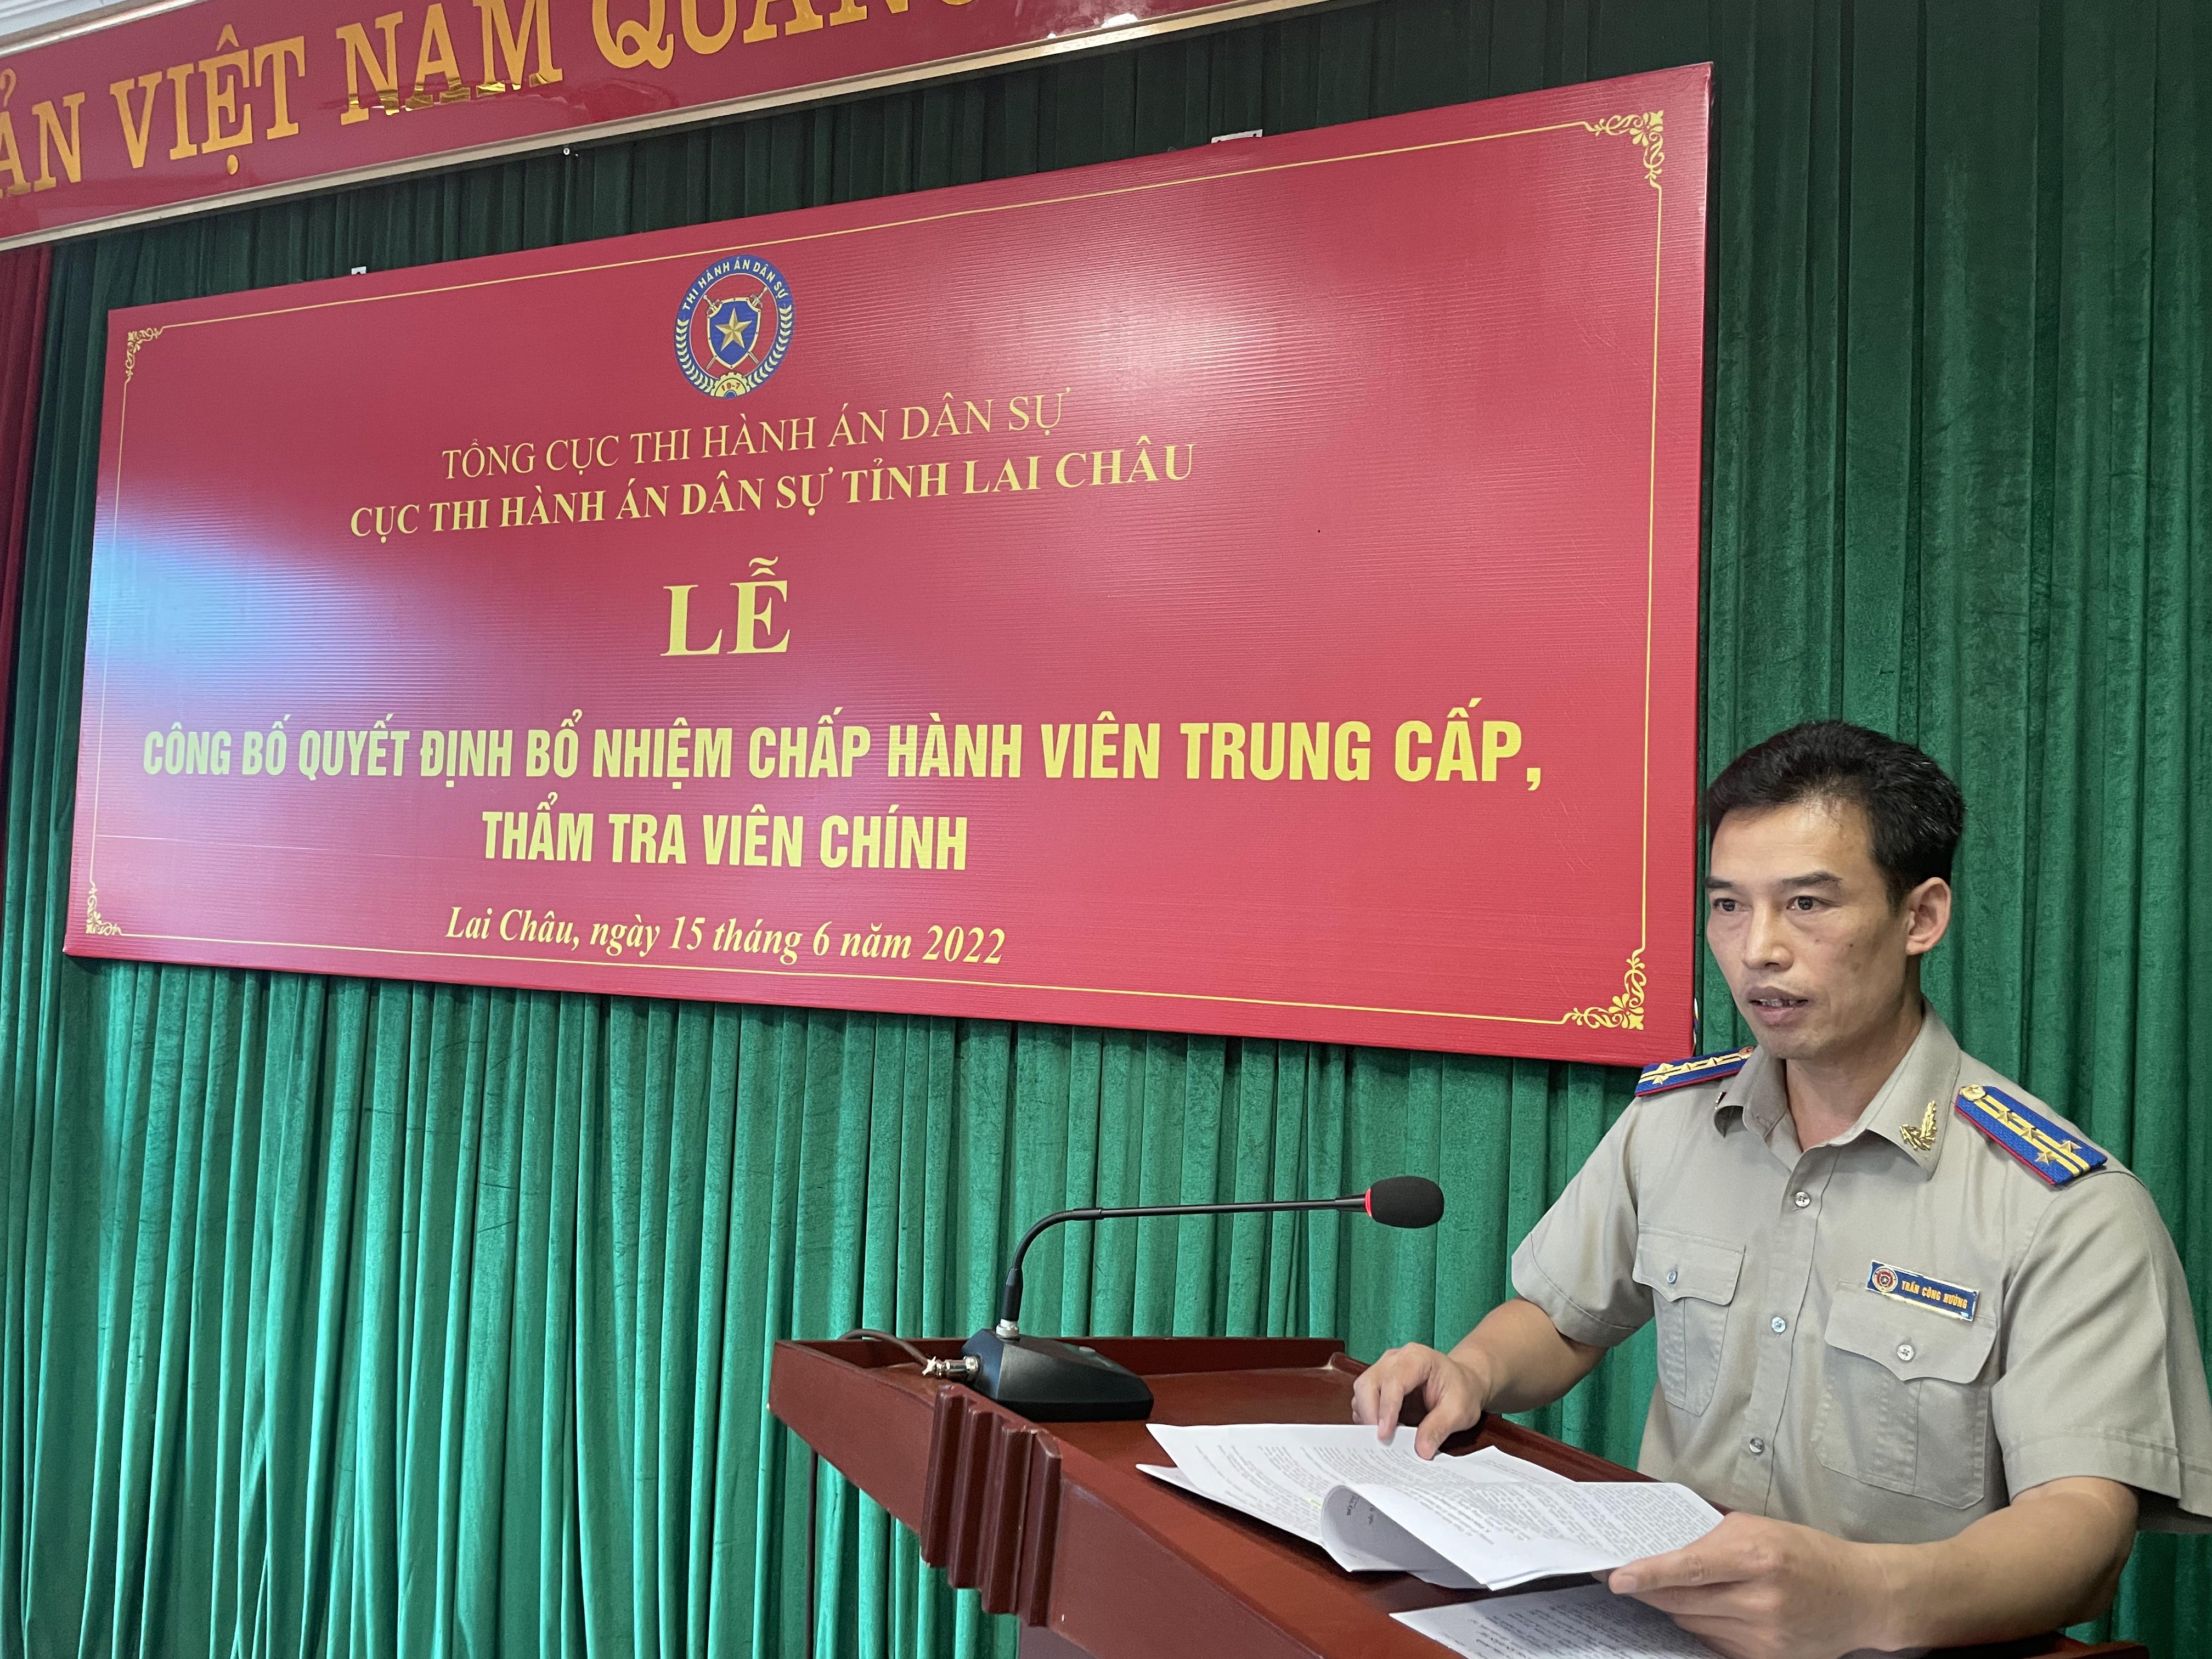 Cục Thi hành án dân sự tỉnh Lai Châu tổ chức Lễ công bố Quyết định bổ nhiệm Chấp hành viên trung cấp, thẩm tra viên chính